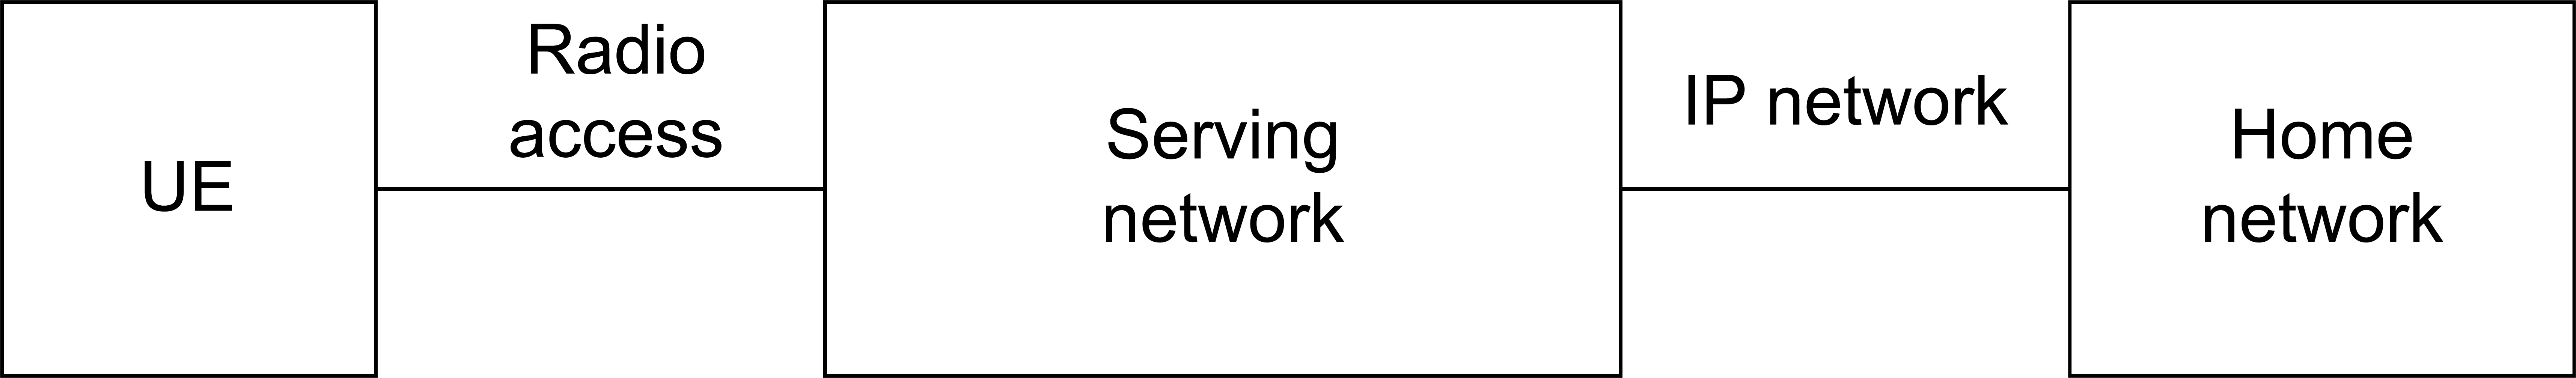 图1-手机网络架构